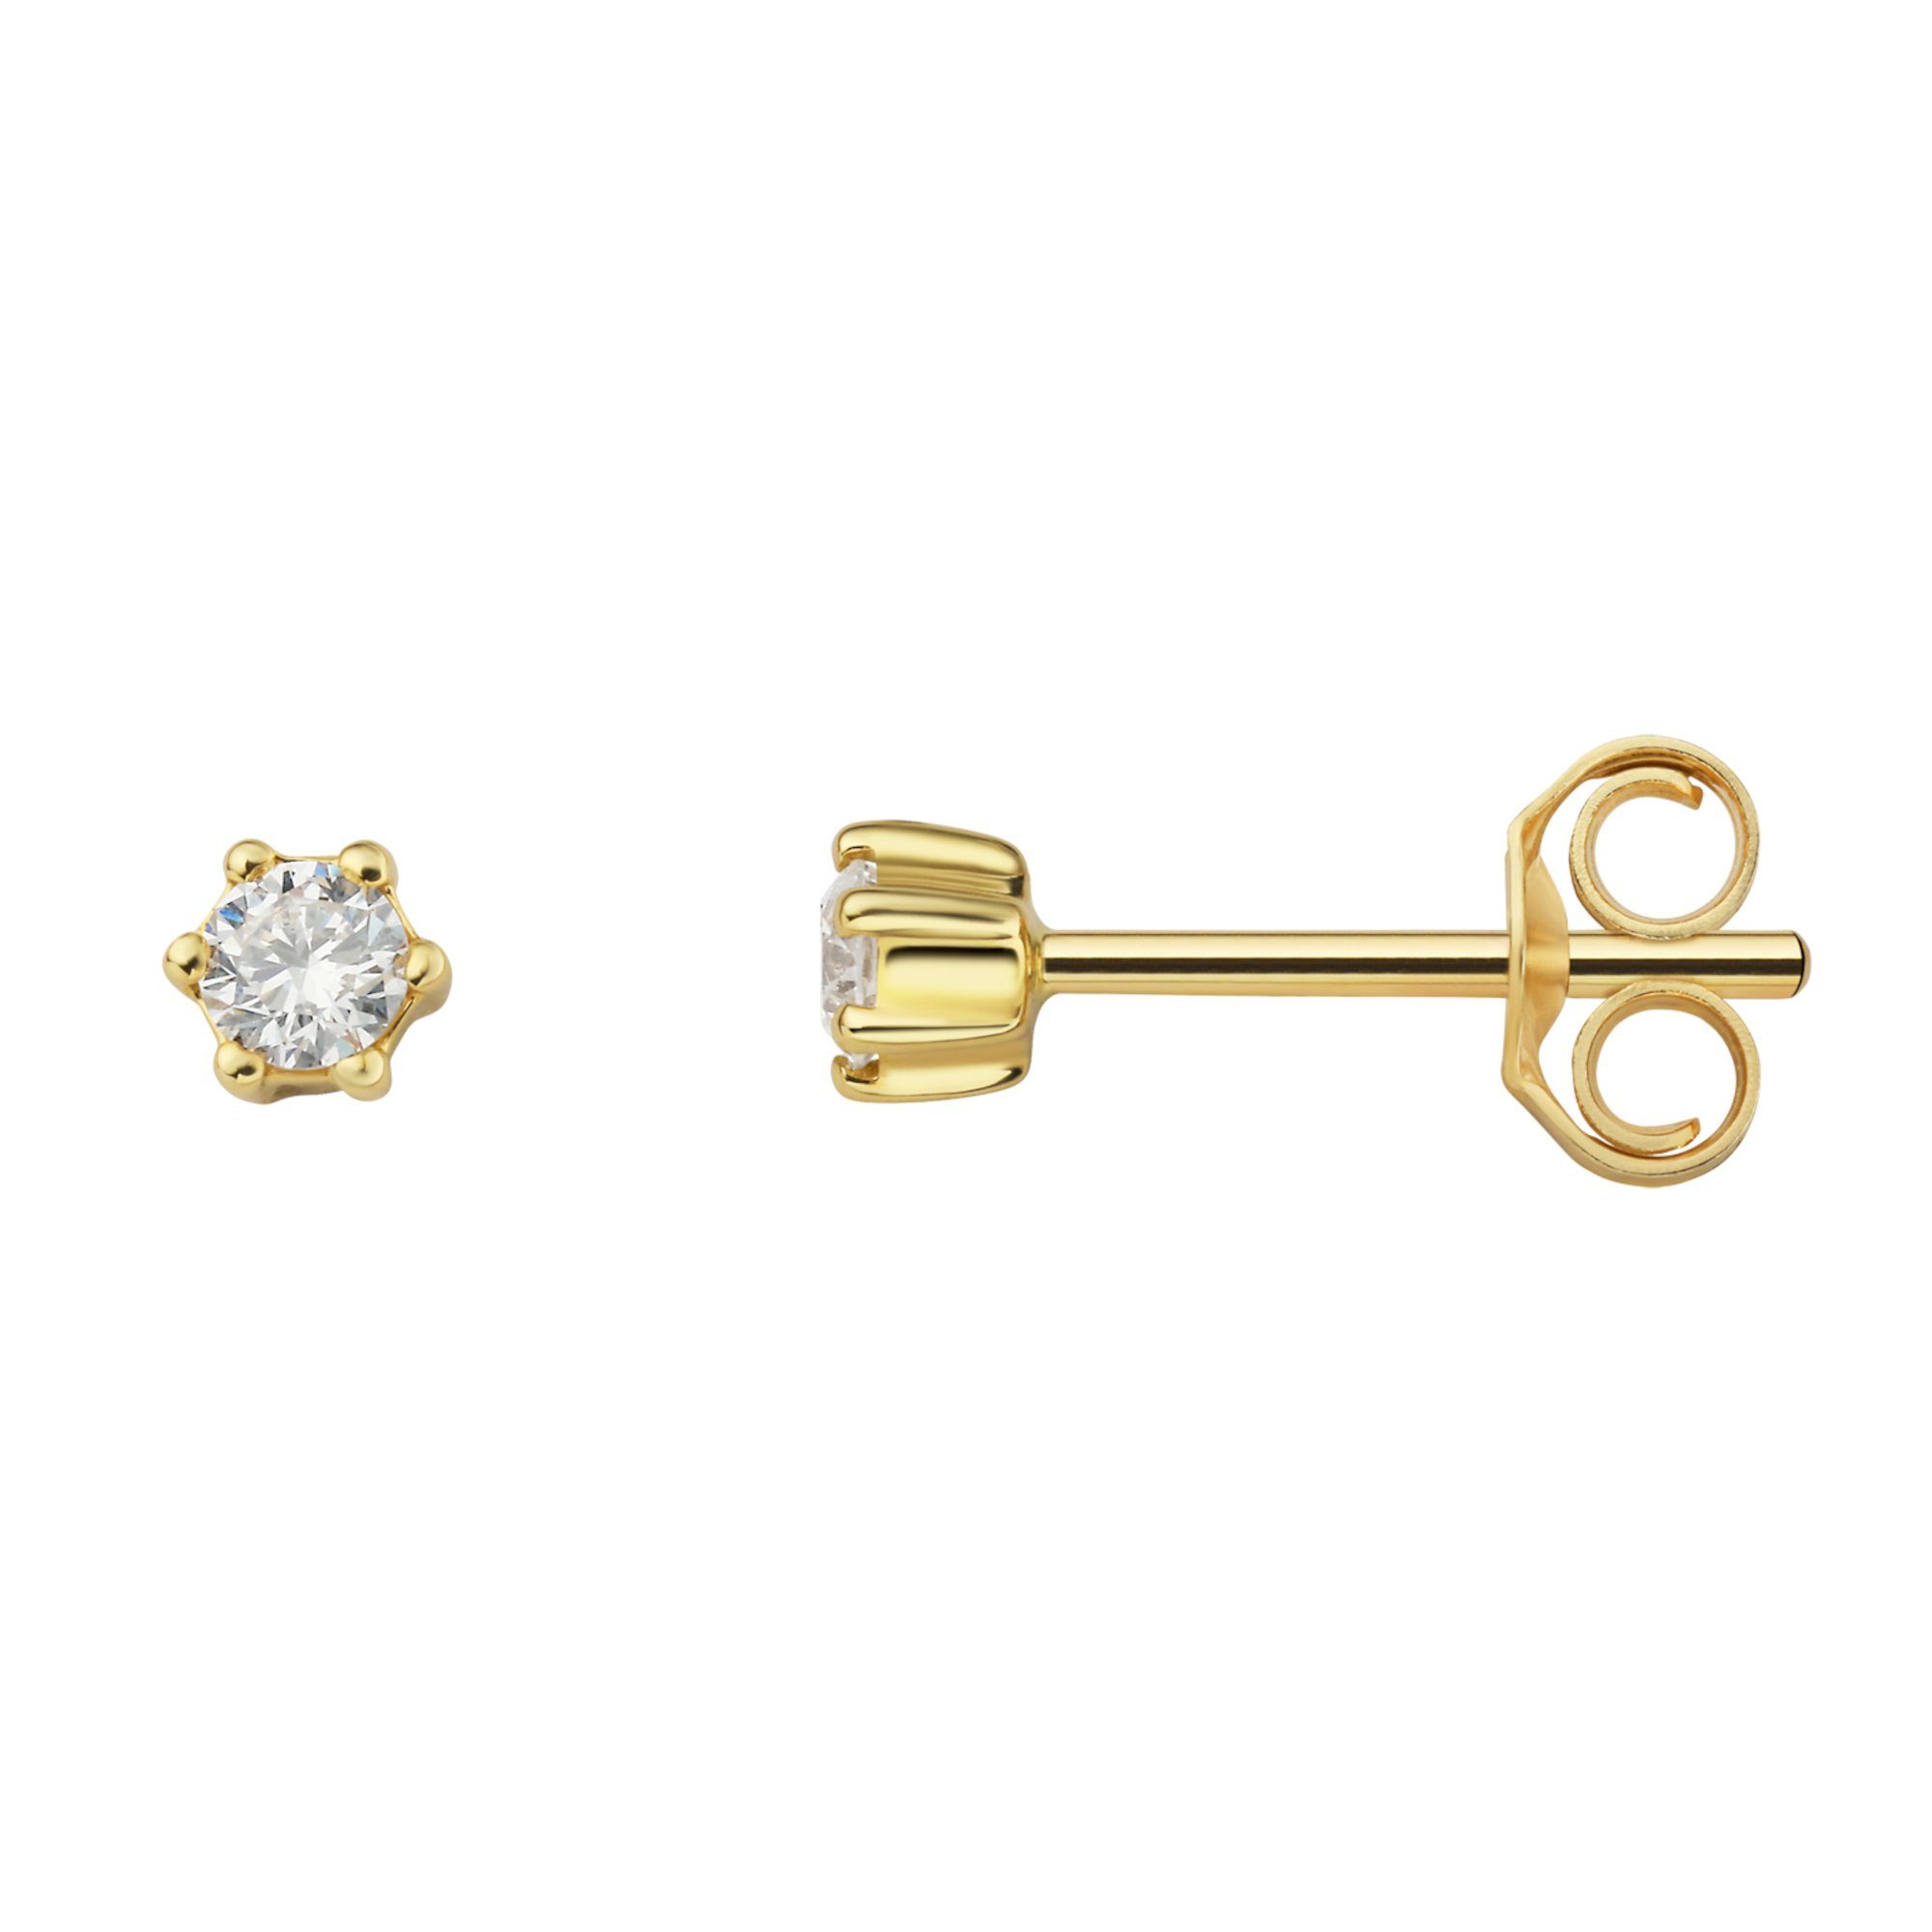 ONE ELEMENT Paar Ohrstecker 0.1 ct Diamant Brillant Ohrringe Ohrstecker aus 750 Gelbgold, Damen Gold Schmuck